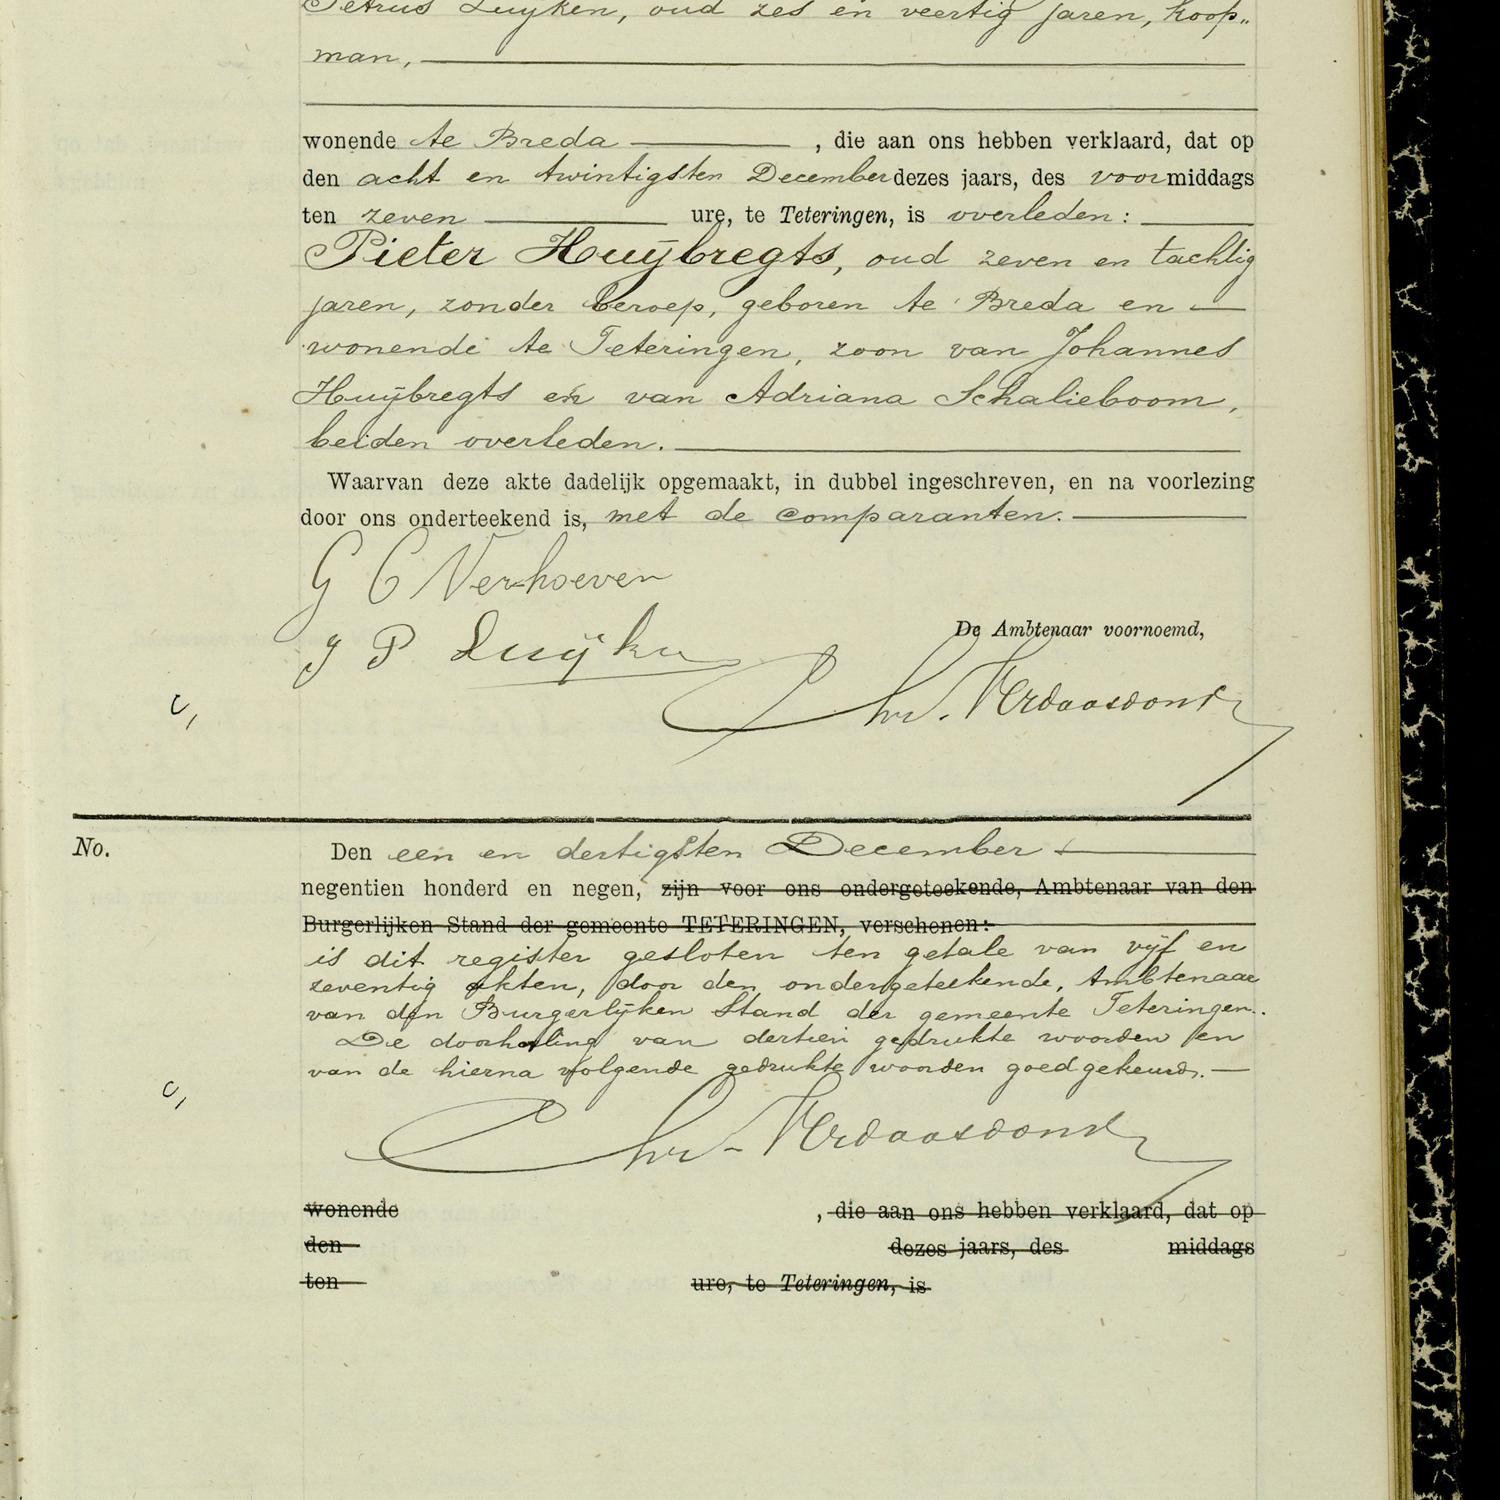 Civil registry of deaths, Teteringen, 1909, record 75